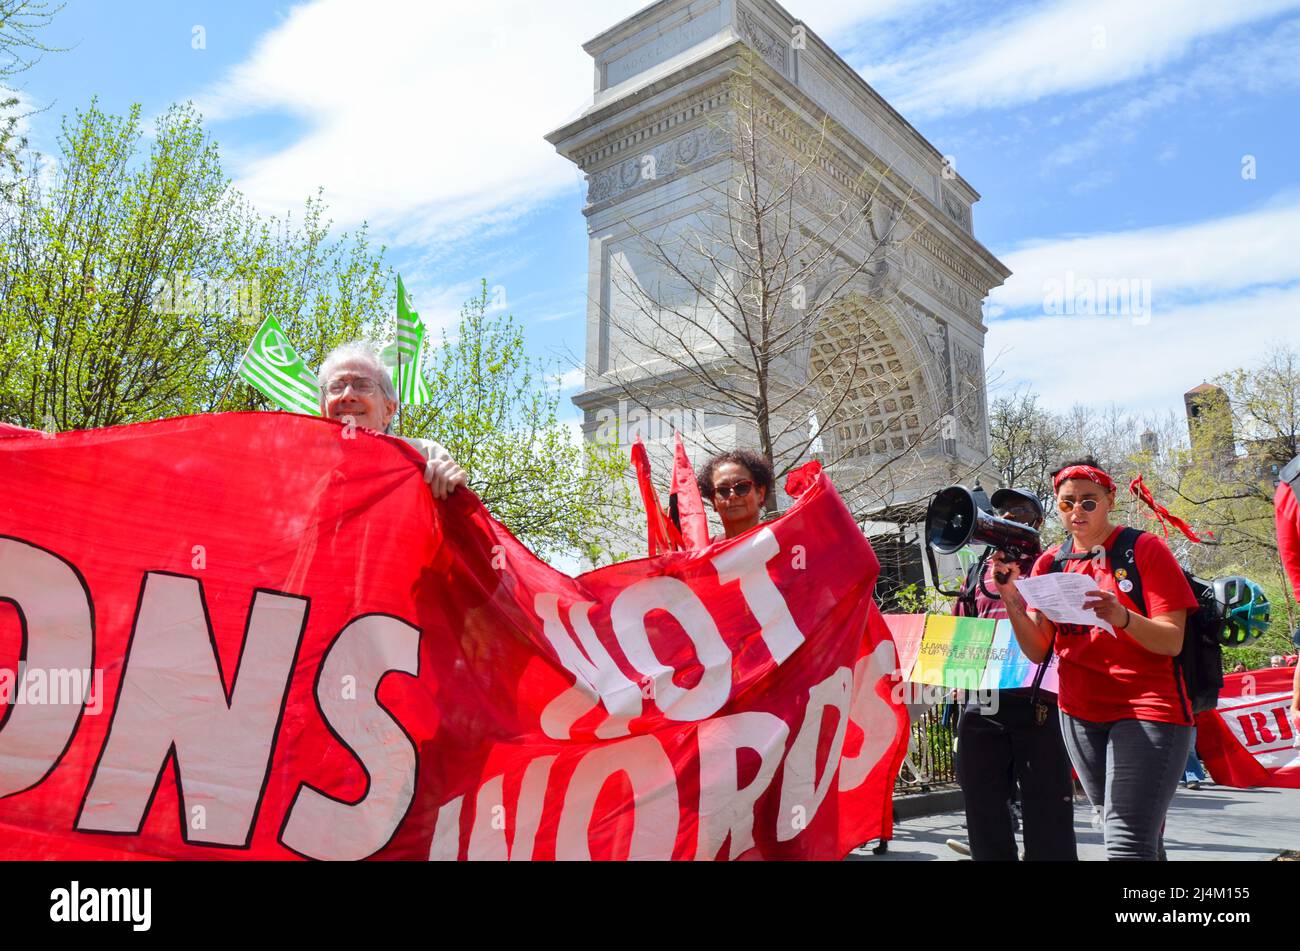 Les activistes de la rébellion des extinction portent tous les couleurs rouges pour alerter ceux qui sont au pouvoir d'agir rapidement pour la justice climatique au parc Washington Square, Banque D'Images